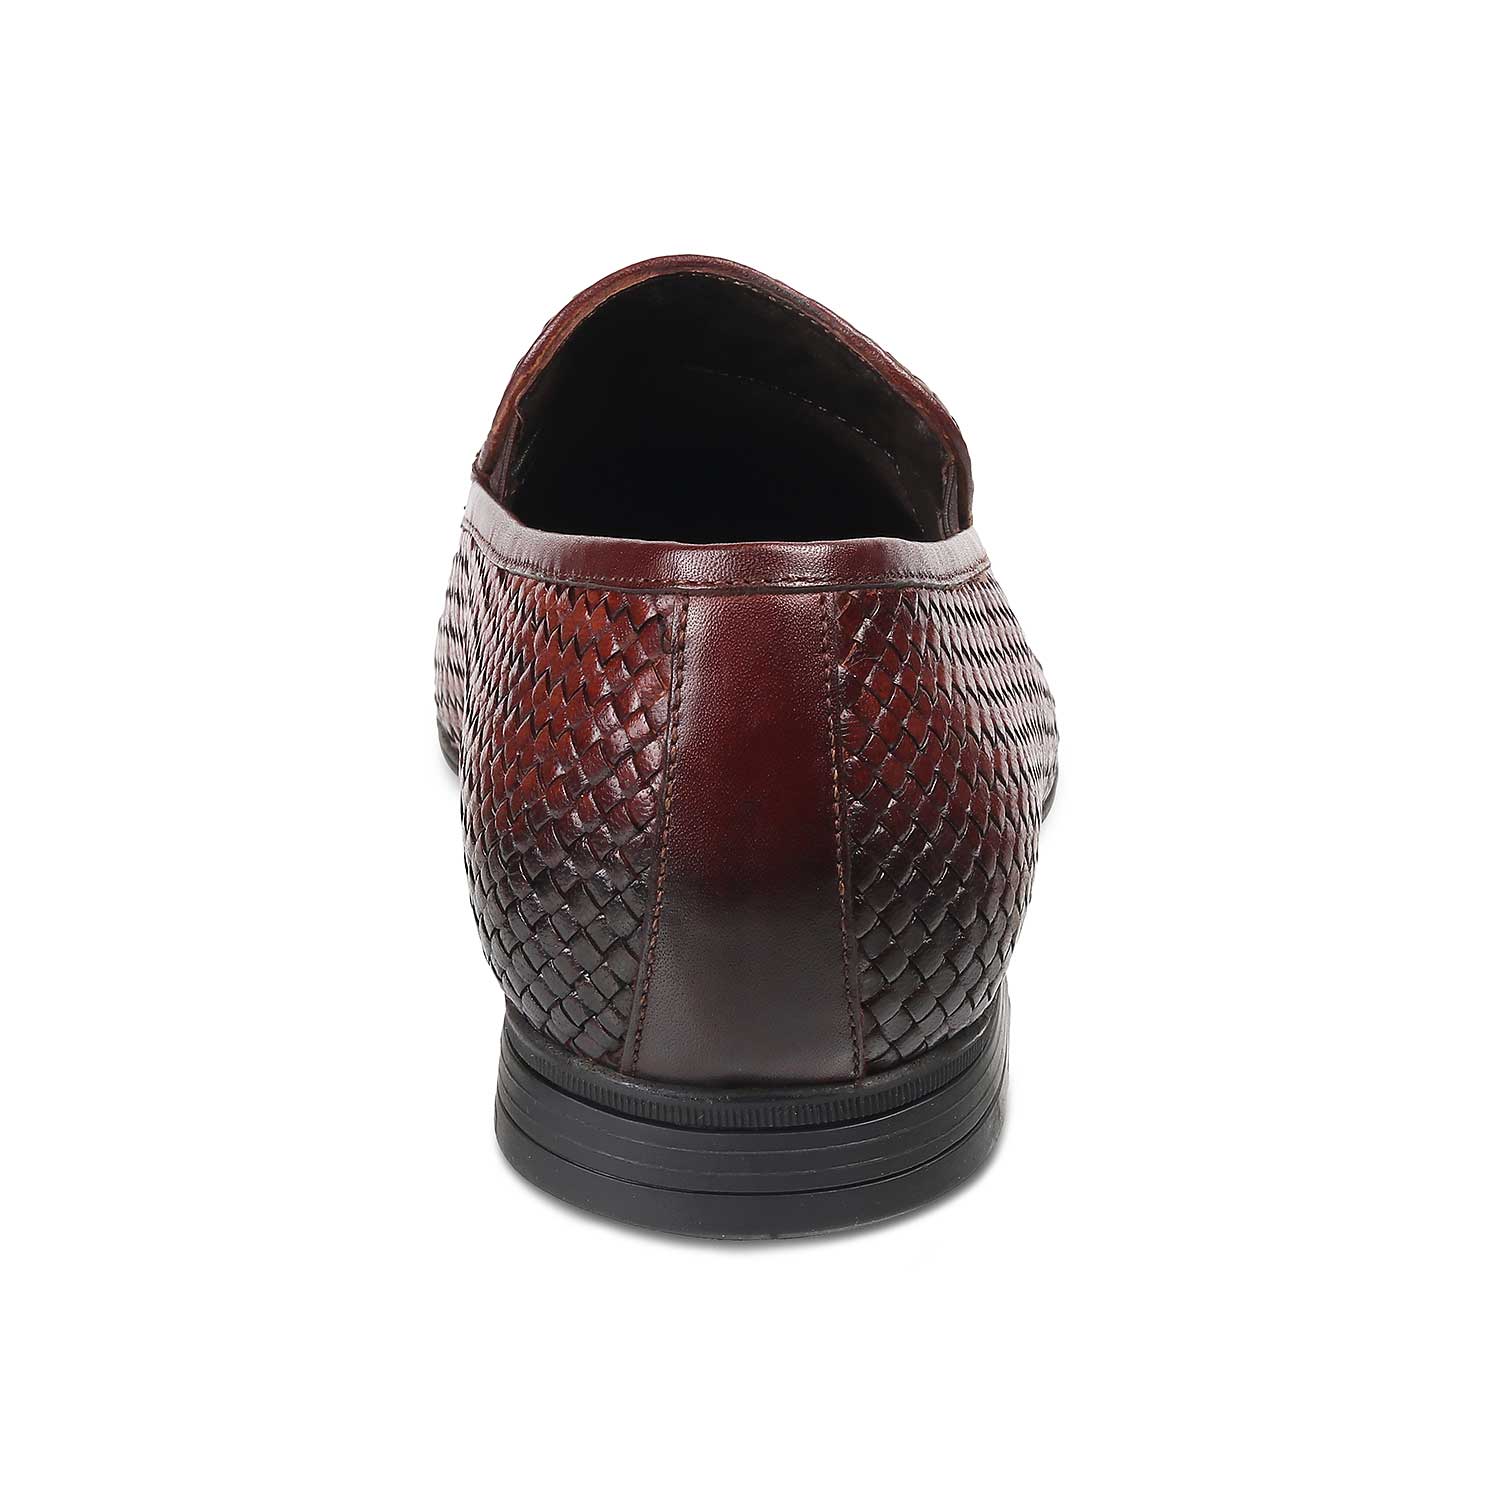 Soweave Tan Men's Tassel Leather Loafers Online at Tresmode.com